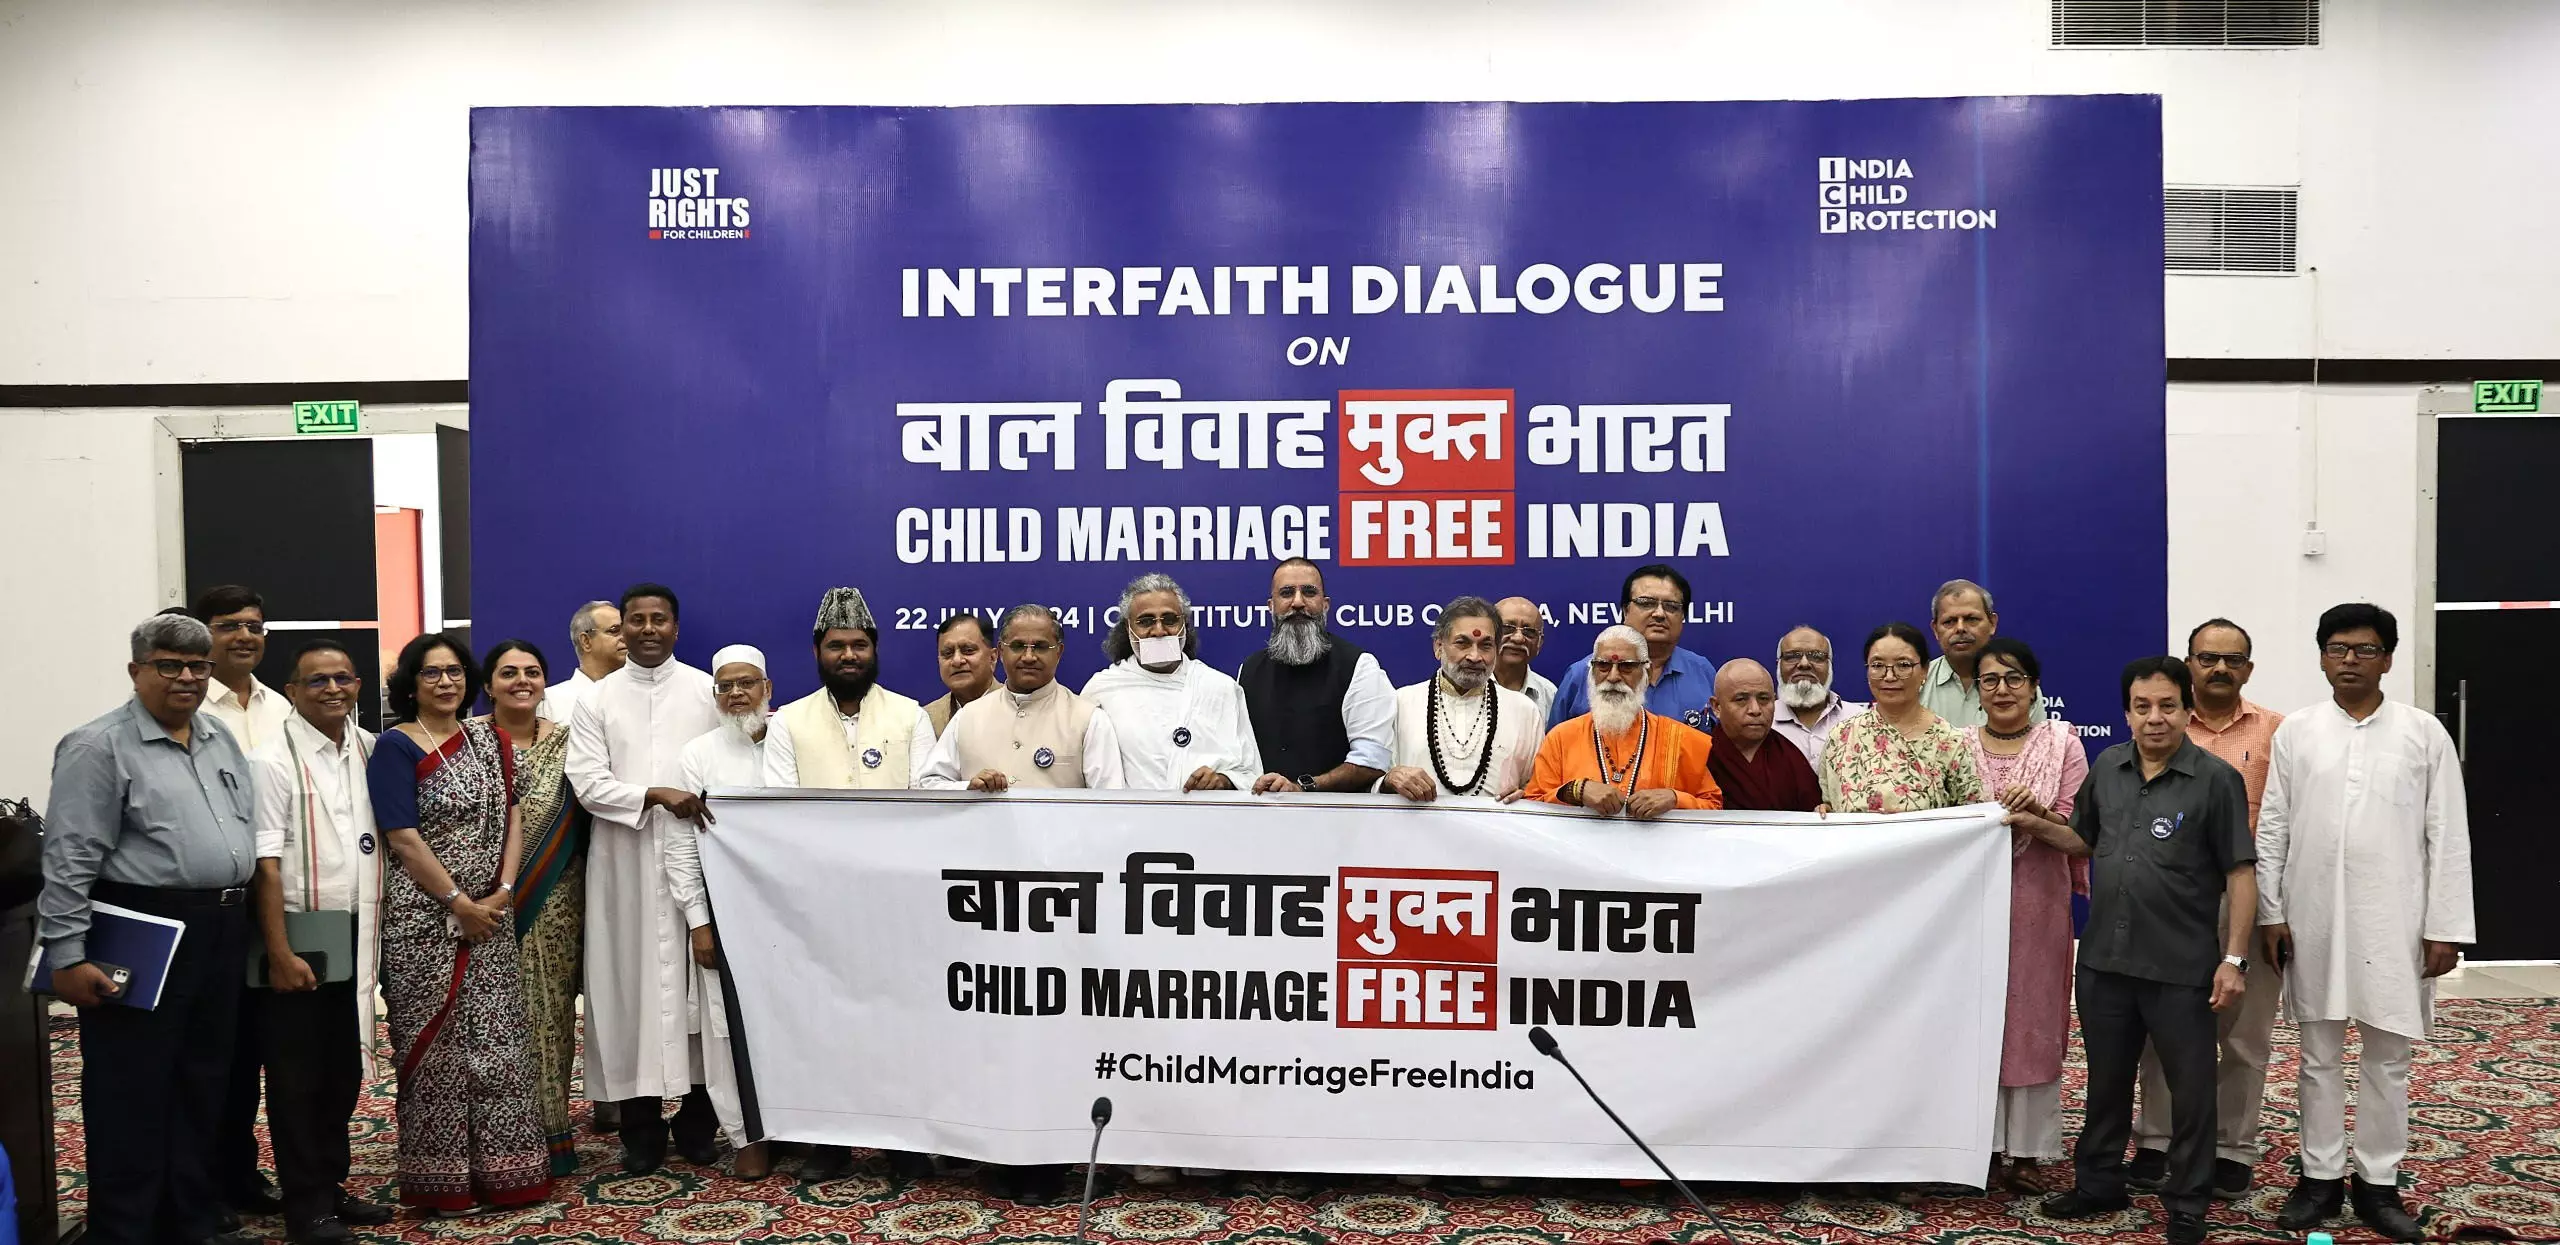 नौ धर्मों के धर्मगुरुओं ने लिया child marriage मुक्त भारत का संकल्प